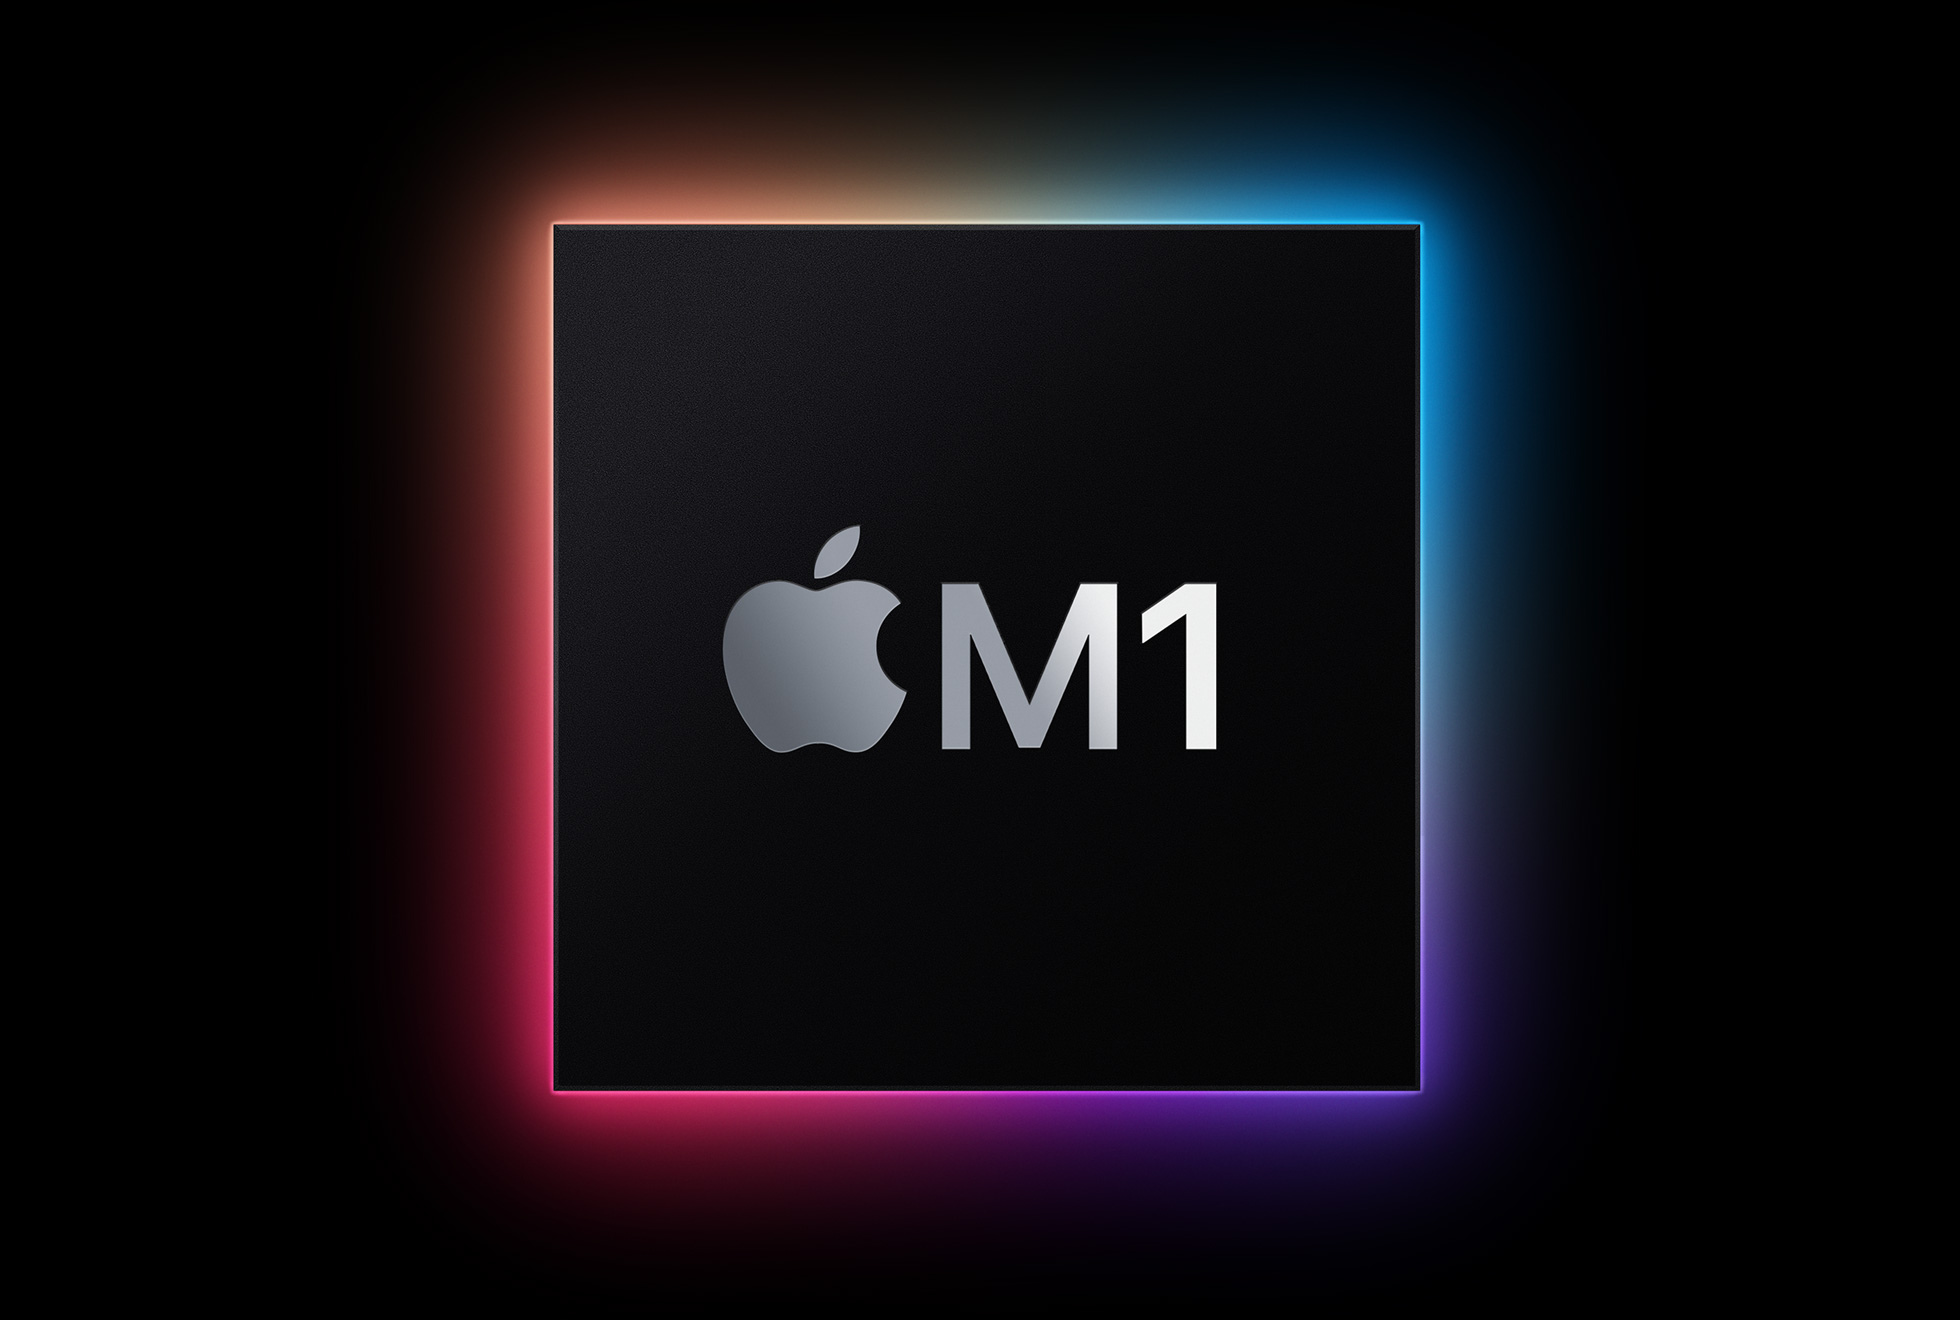 Apple M1 é o primeiro chip ARM para Macs